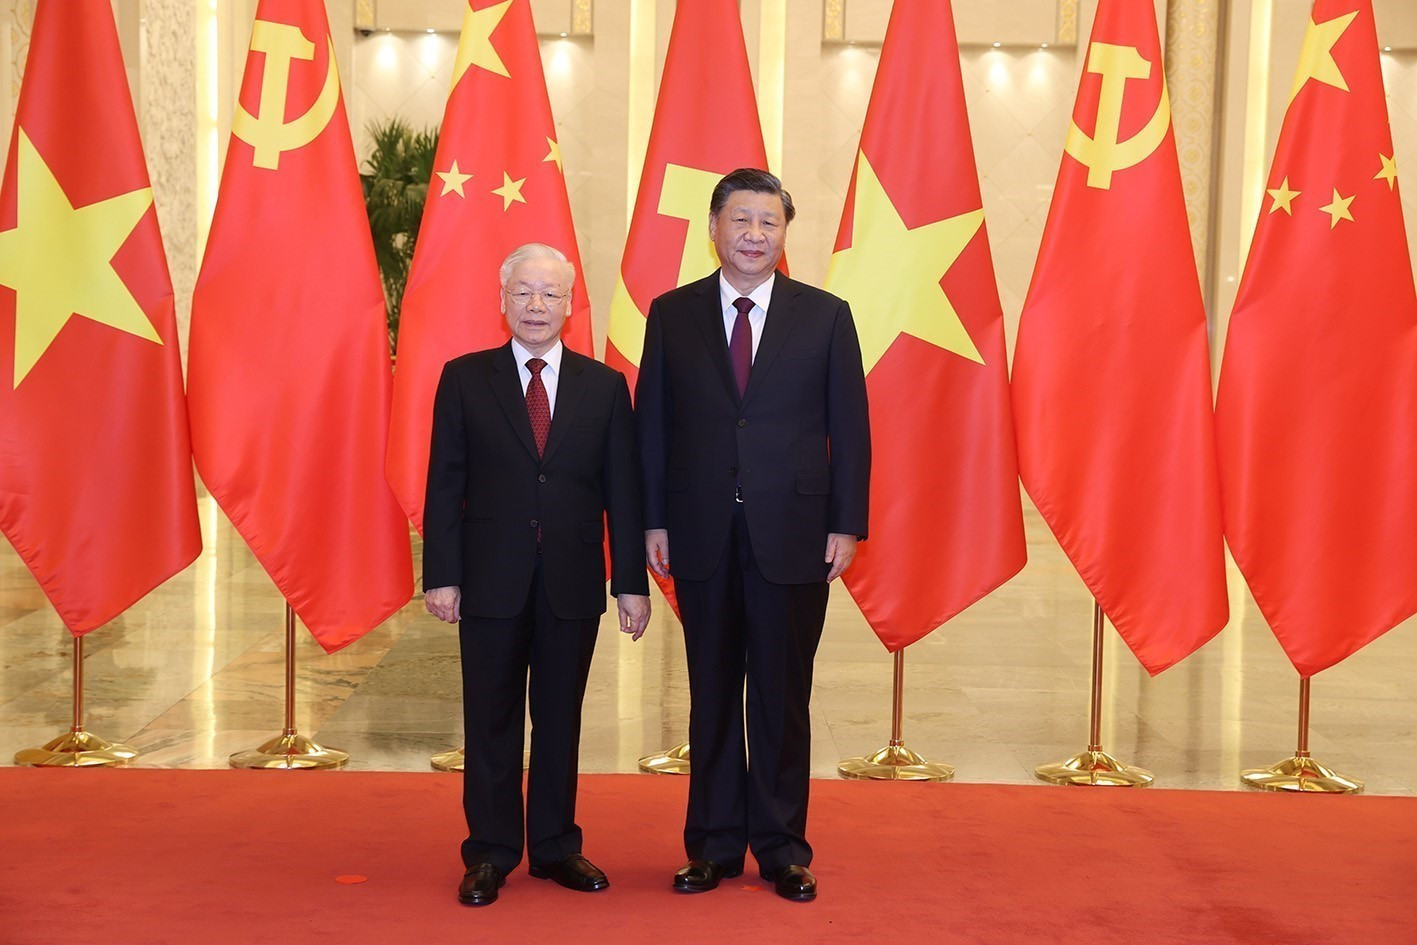 Bộ trưởng Ngoại giao: Tiếp thêm động lực mới cho quan hệ Việt Nam - Trung Quốc